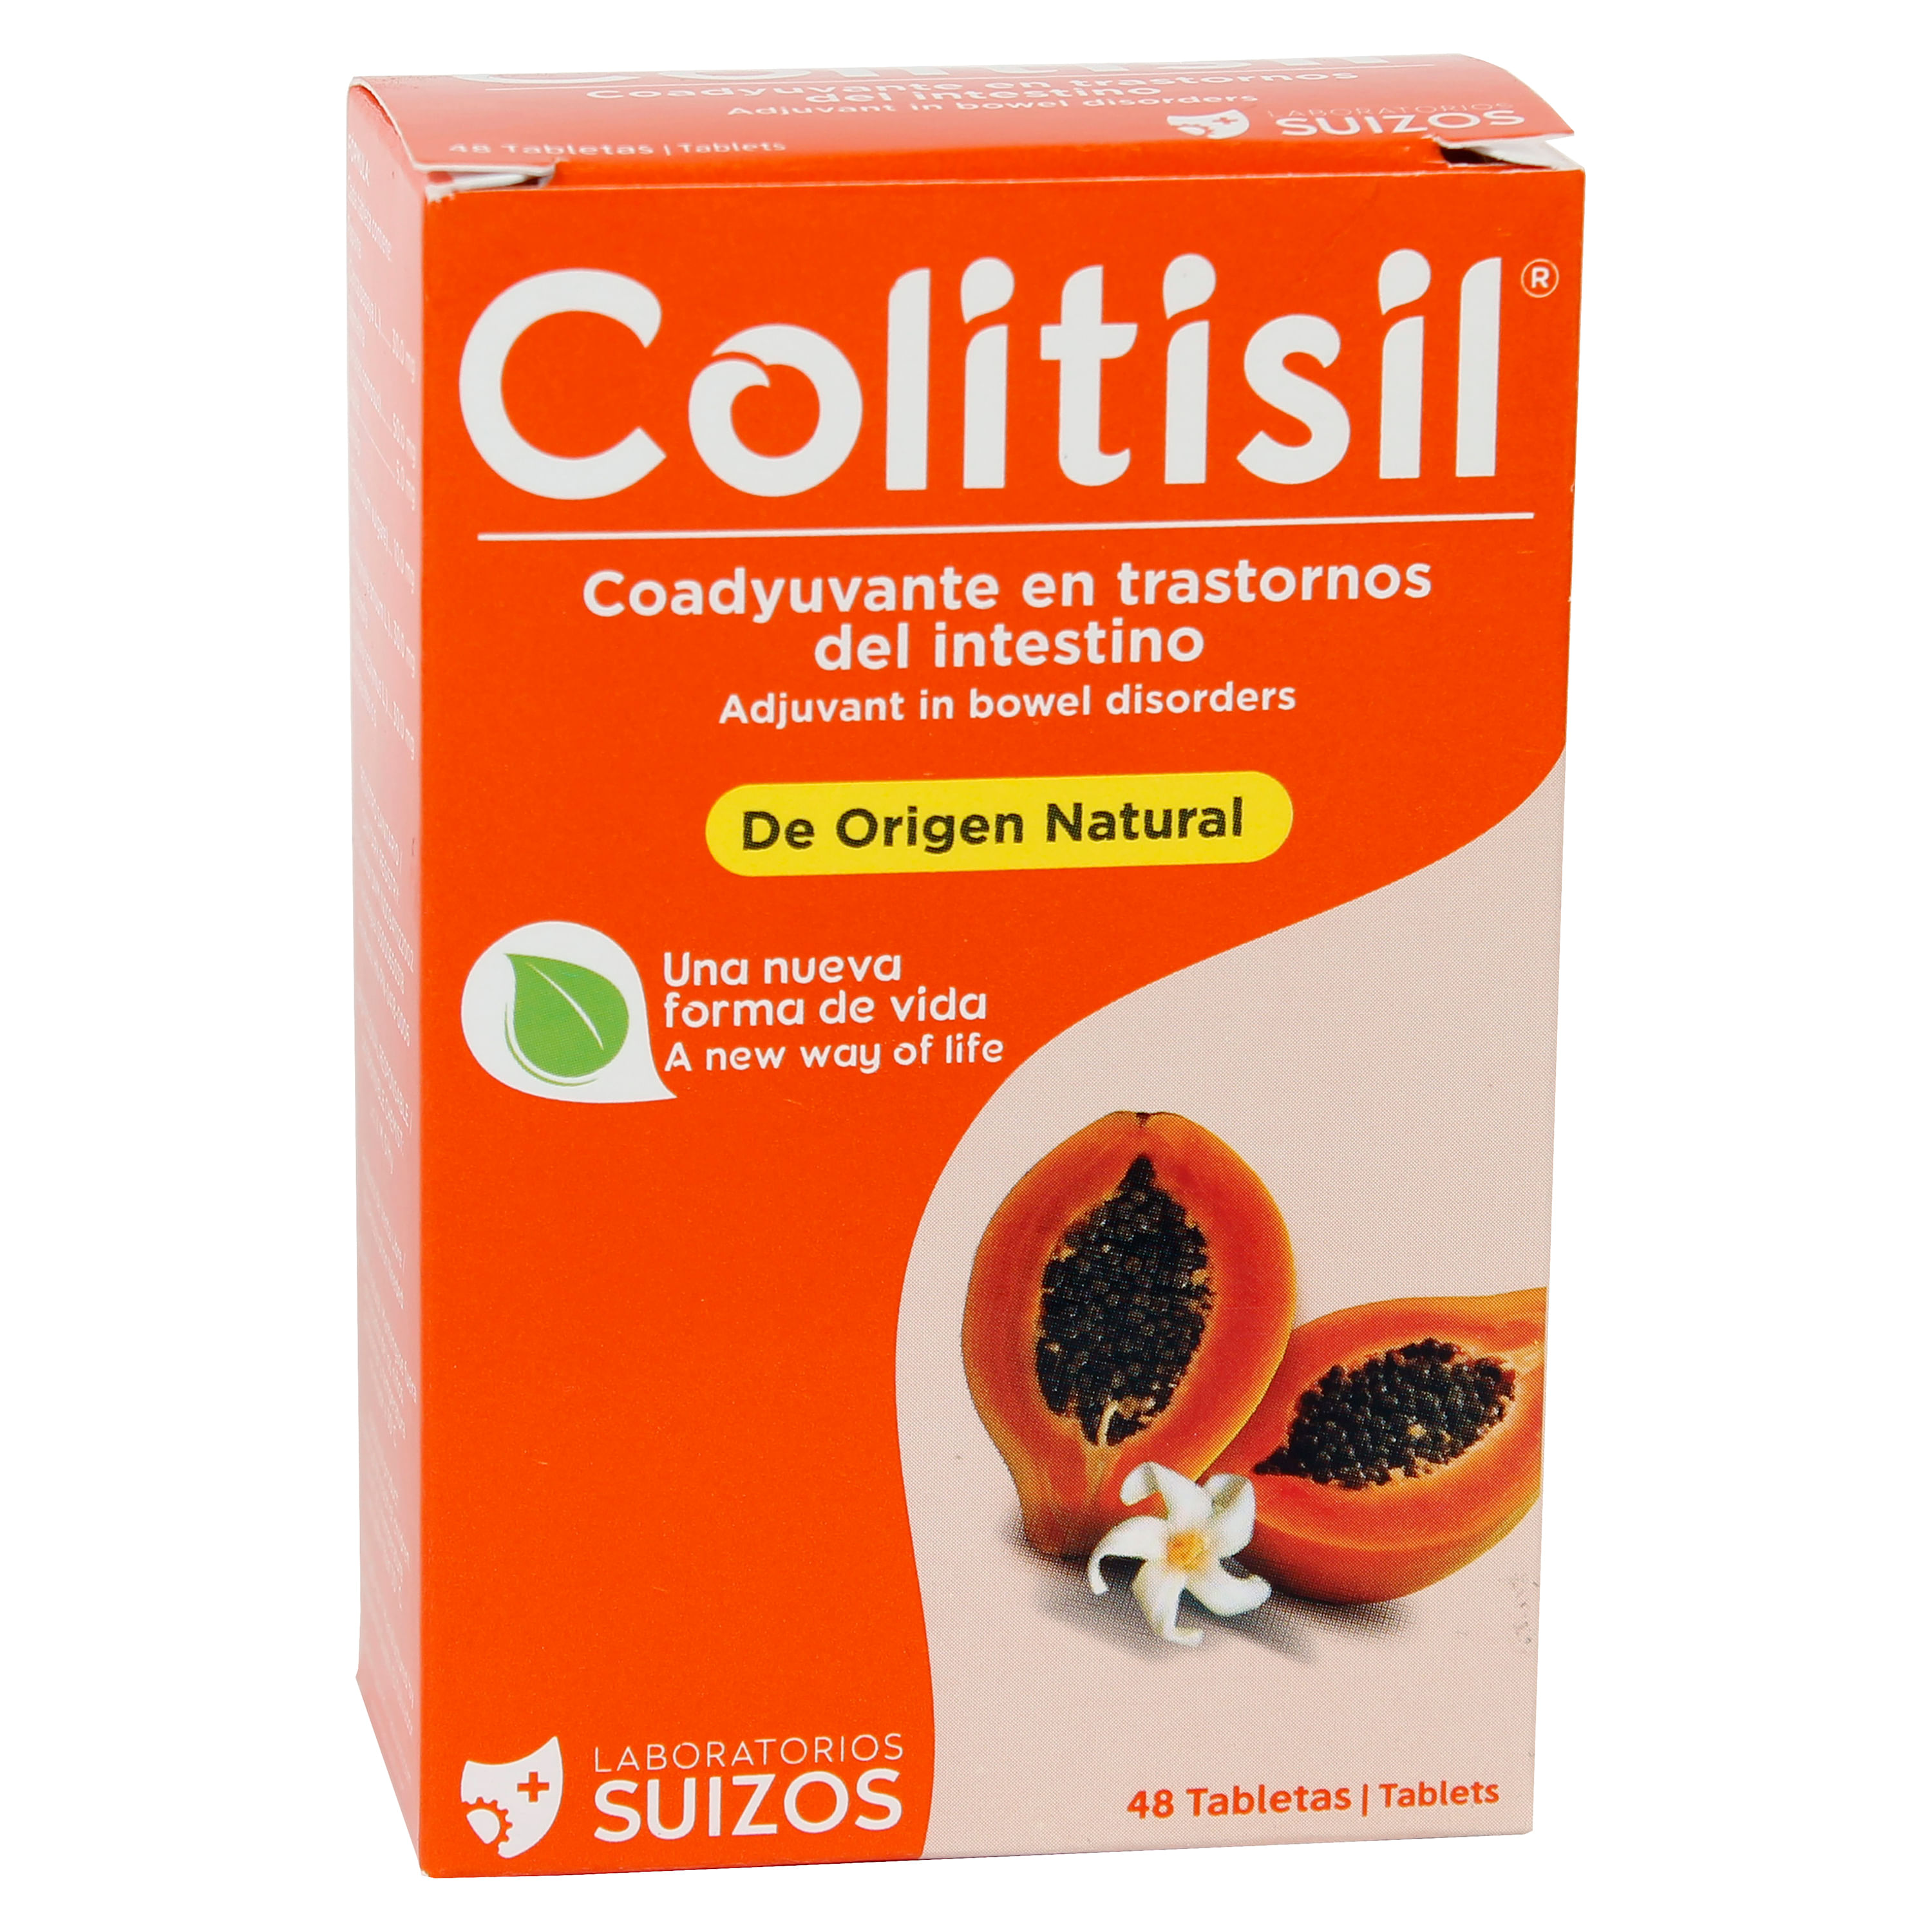 S-Colitisil-Venta-Por-Unidad-1-5971